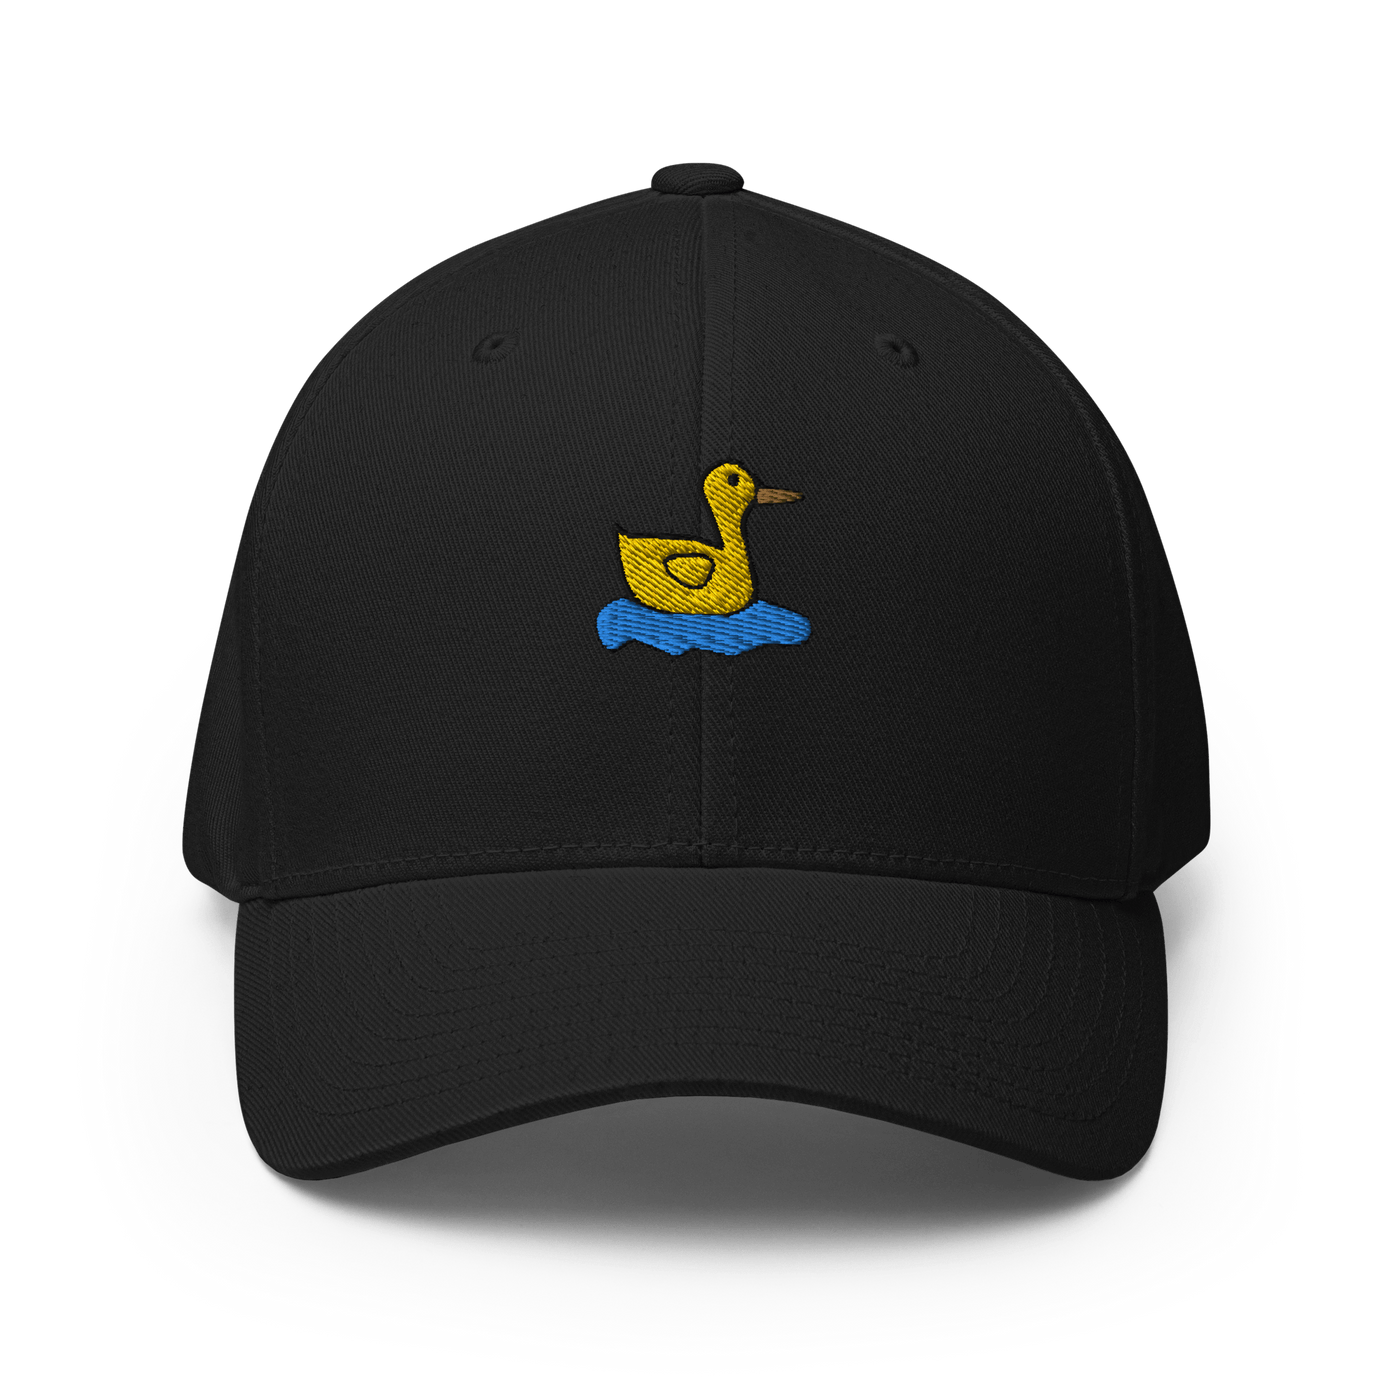 Lonely Duck Flexfit Cap - Black - S/M - Just Another Cap Store